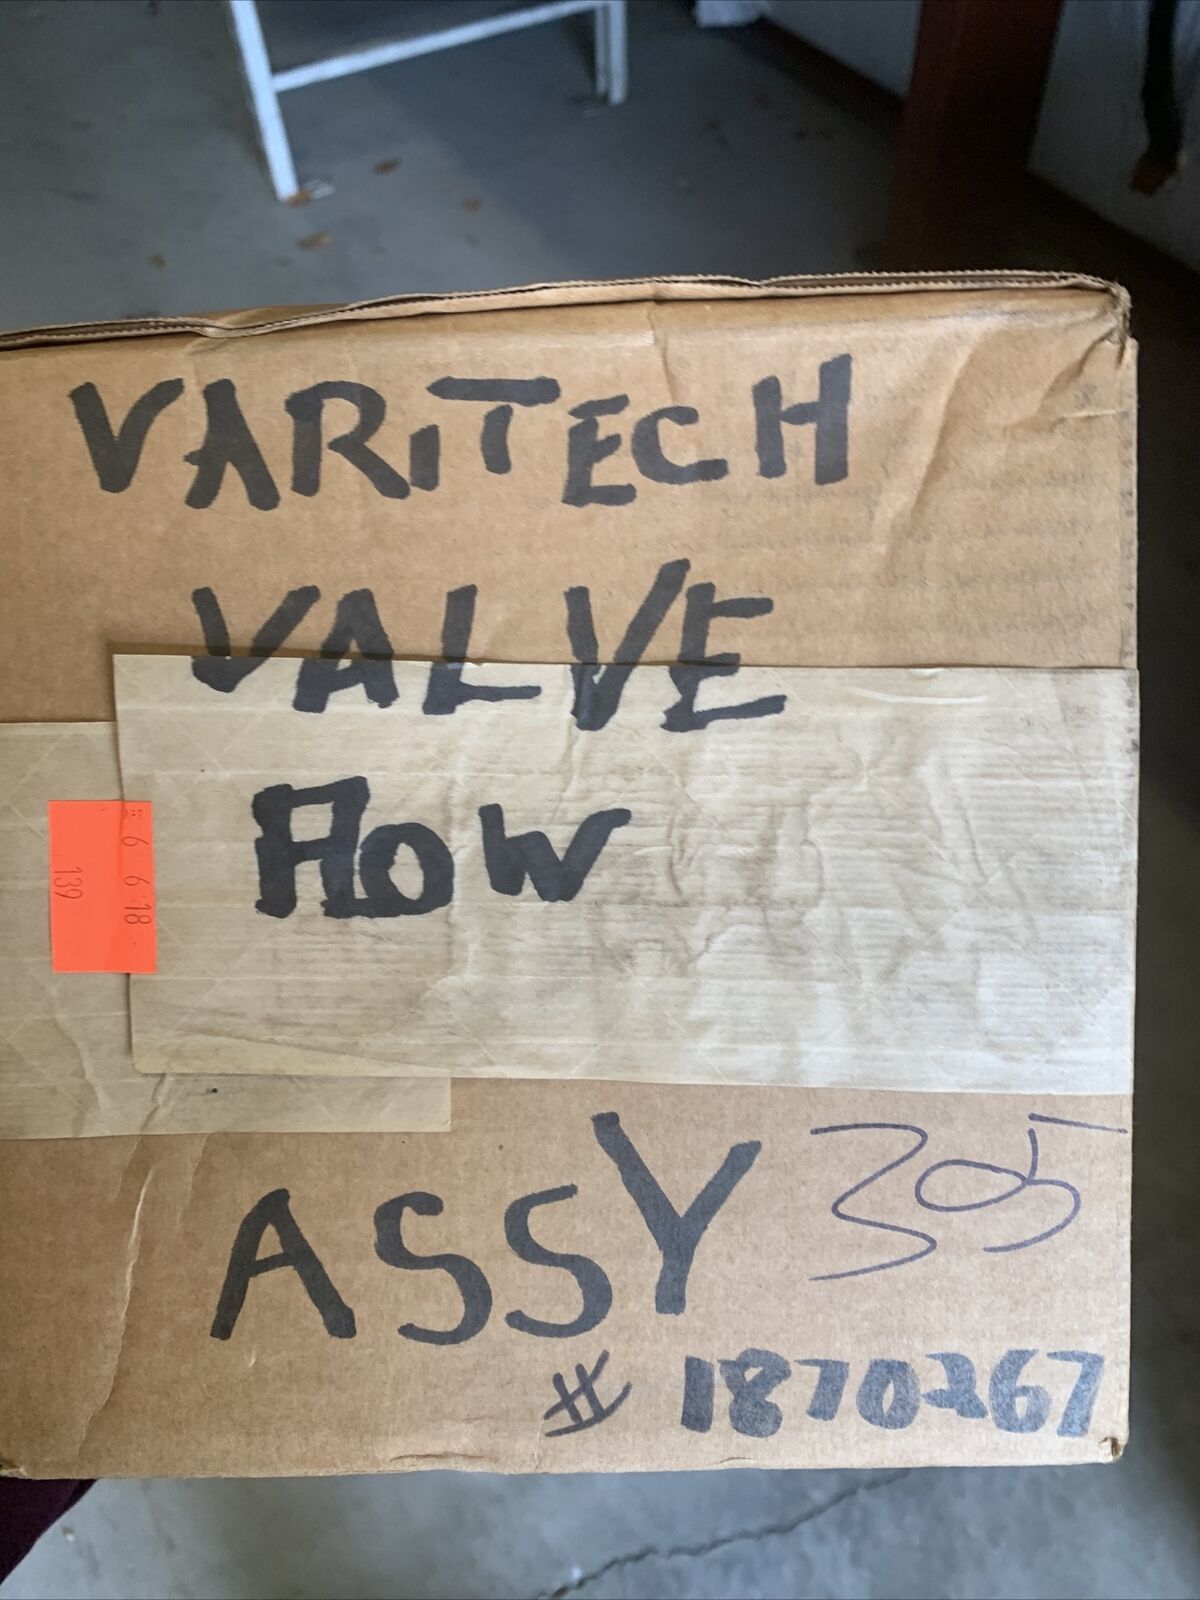 New Parker Varitech Valve flow 1870267 25-UPGRADE-102MM-B